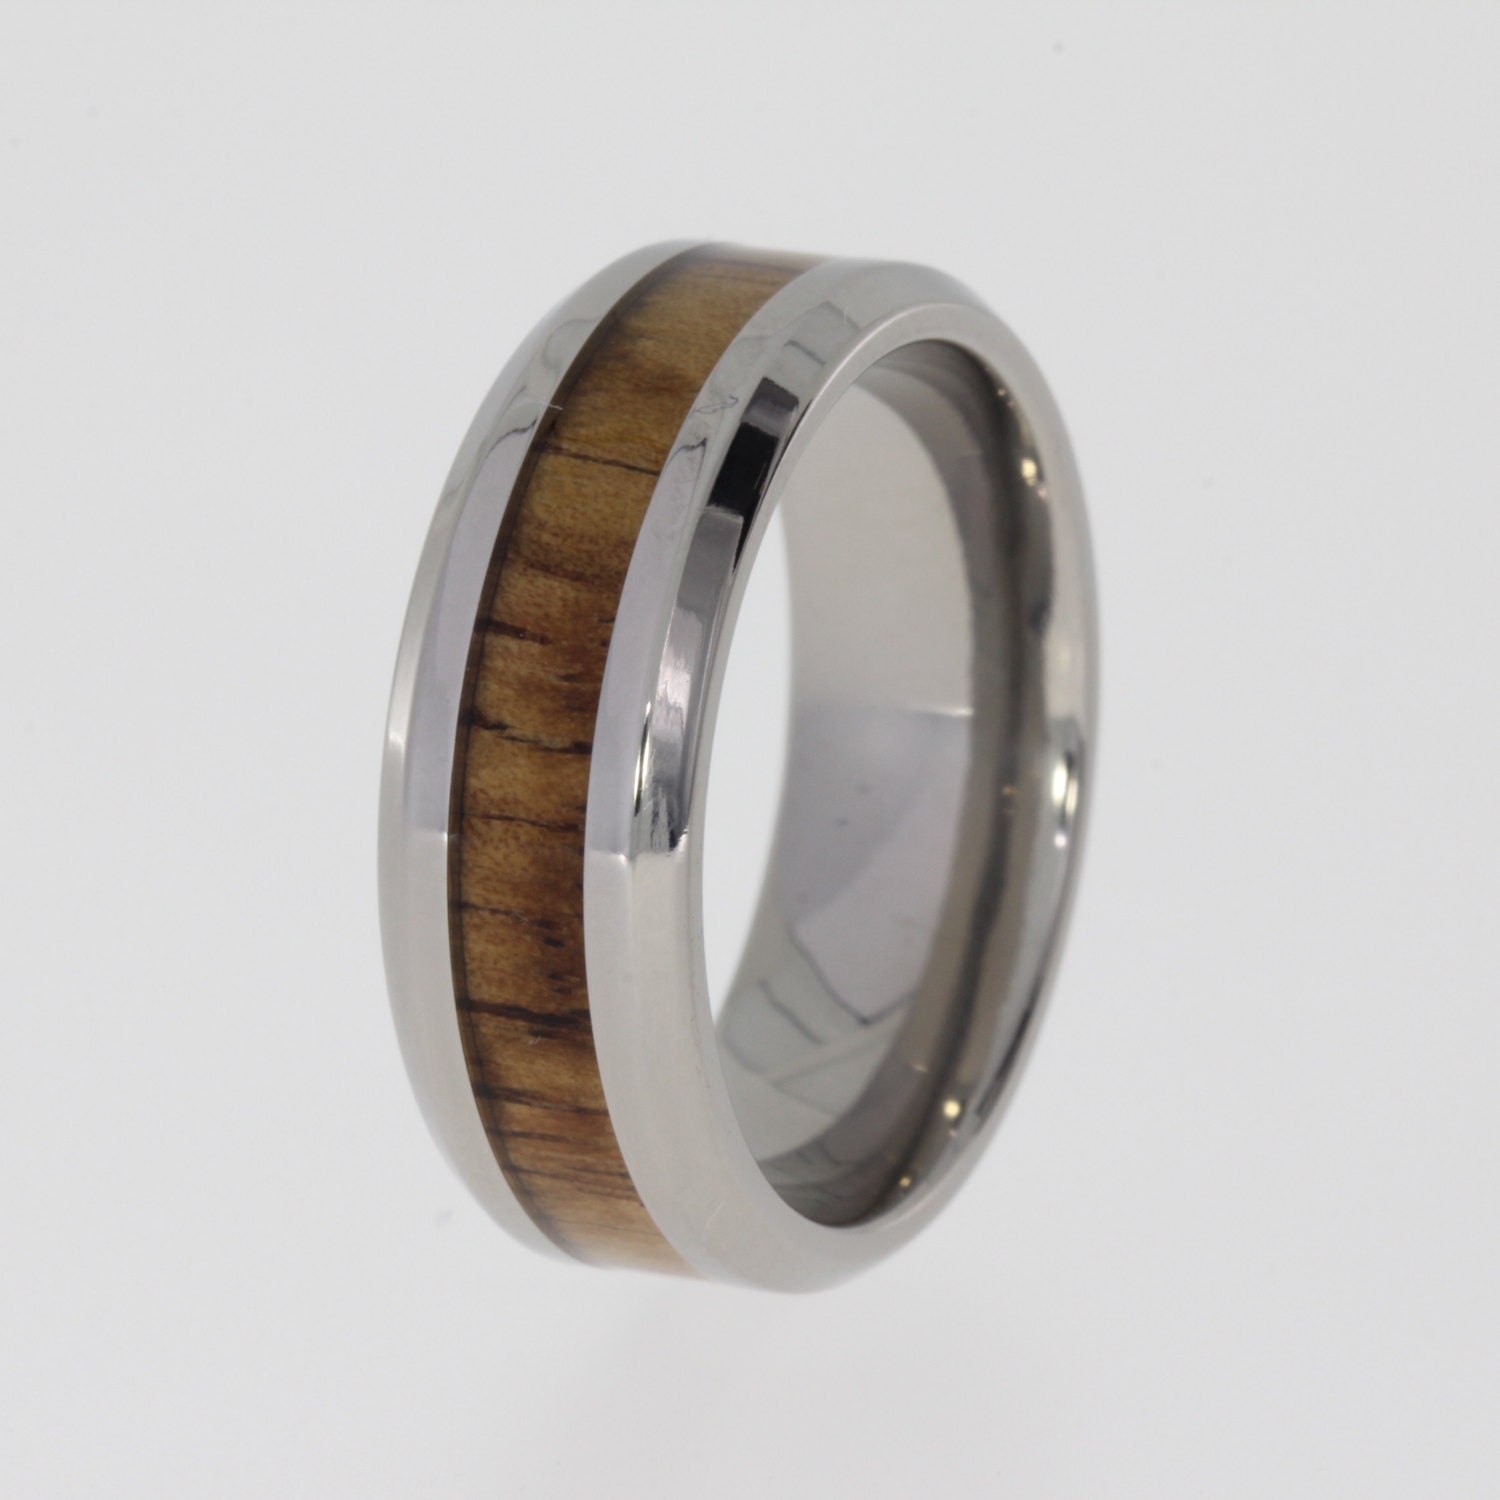 Koa Wood Ring beveled Titanium edge Wedding band or Engagement ring ...